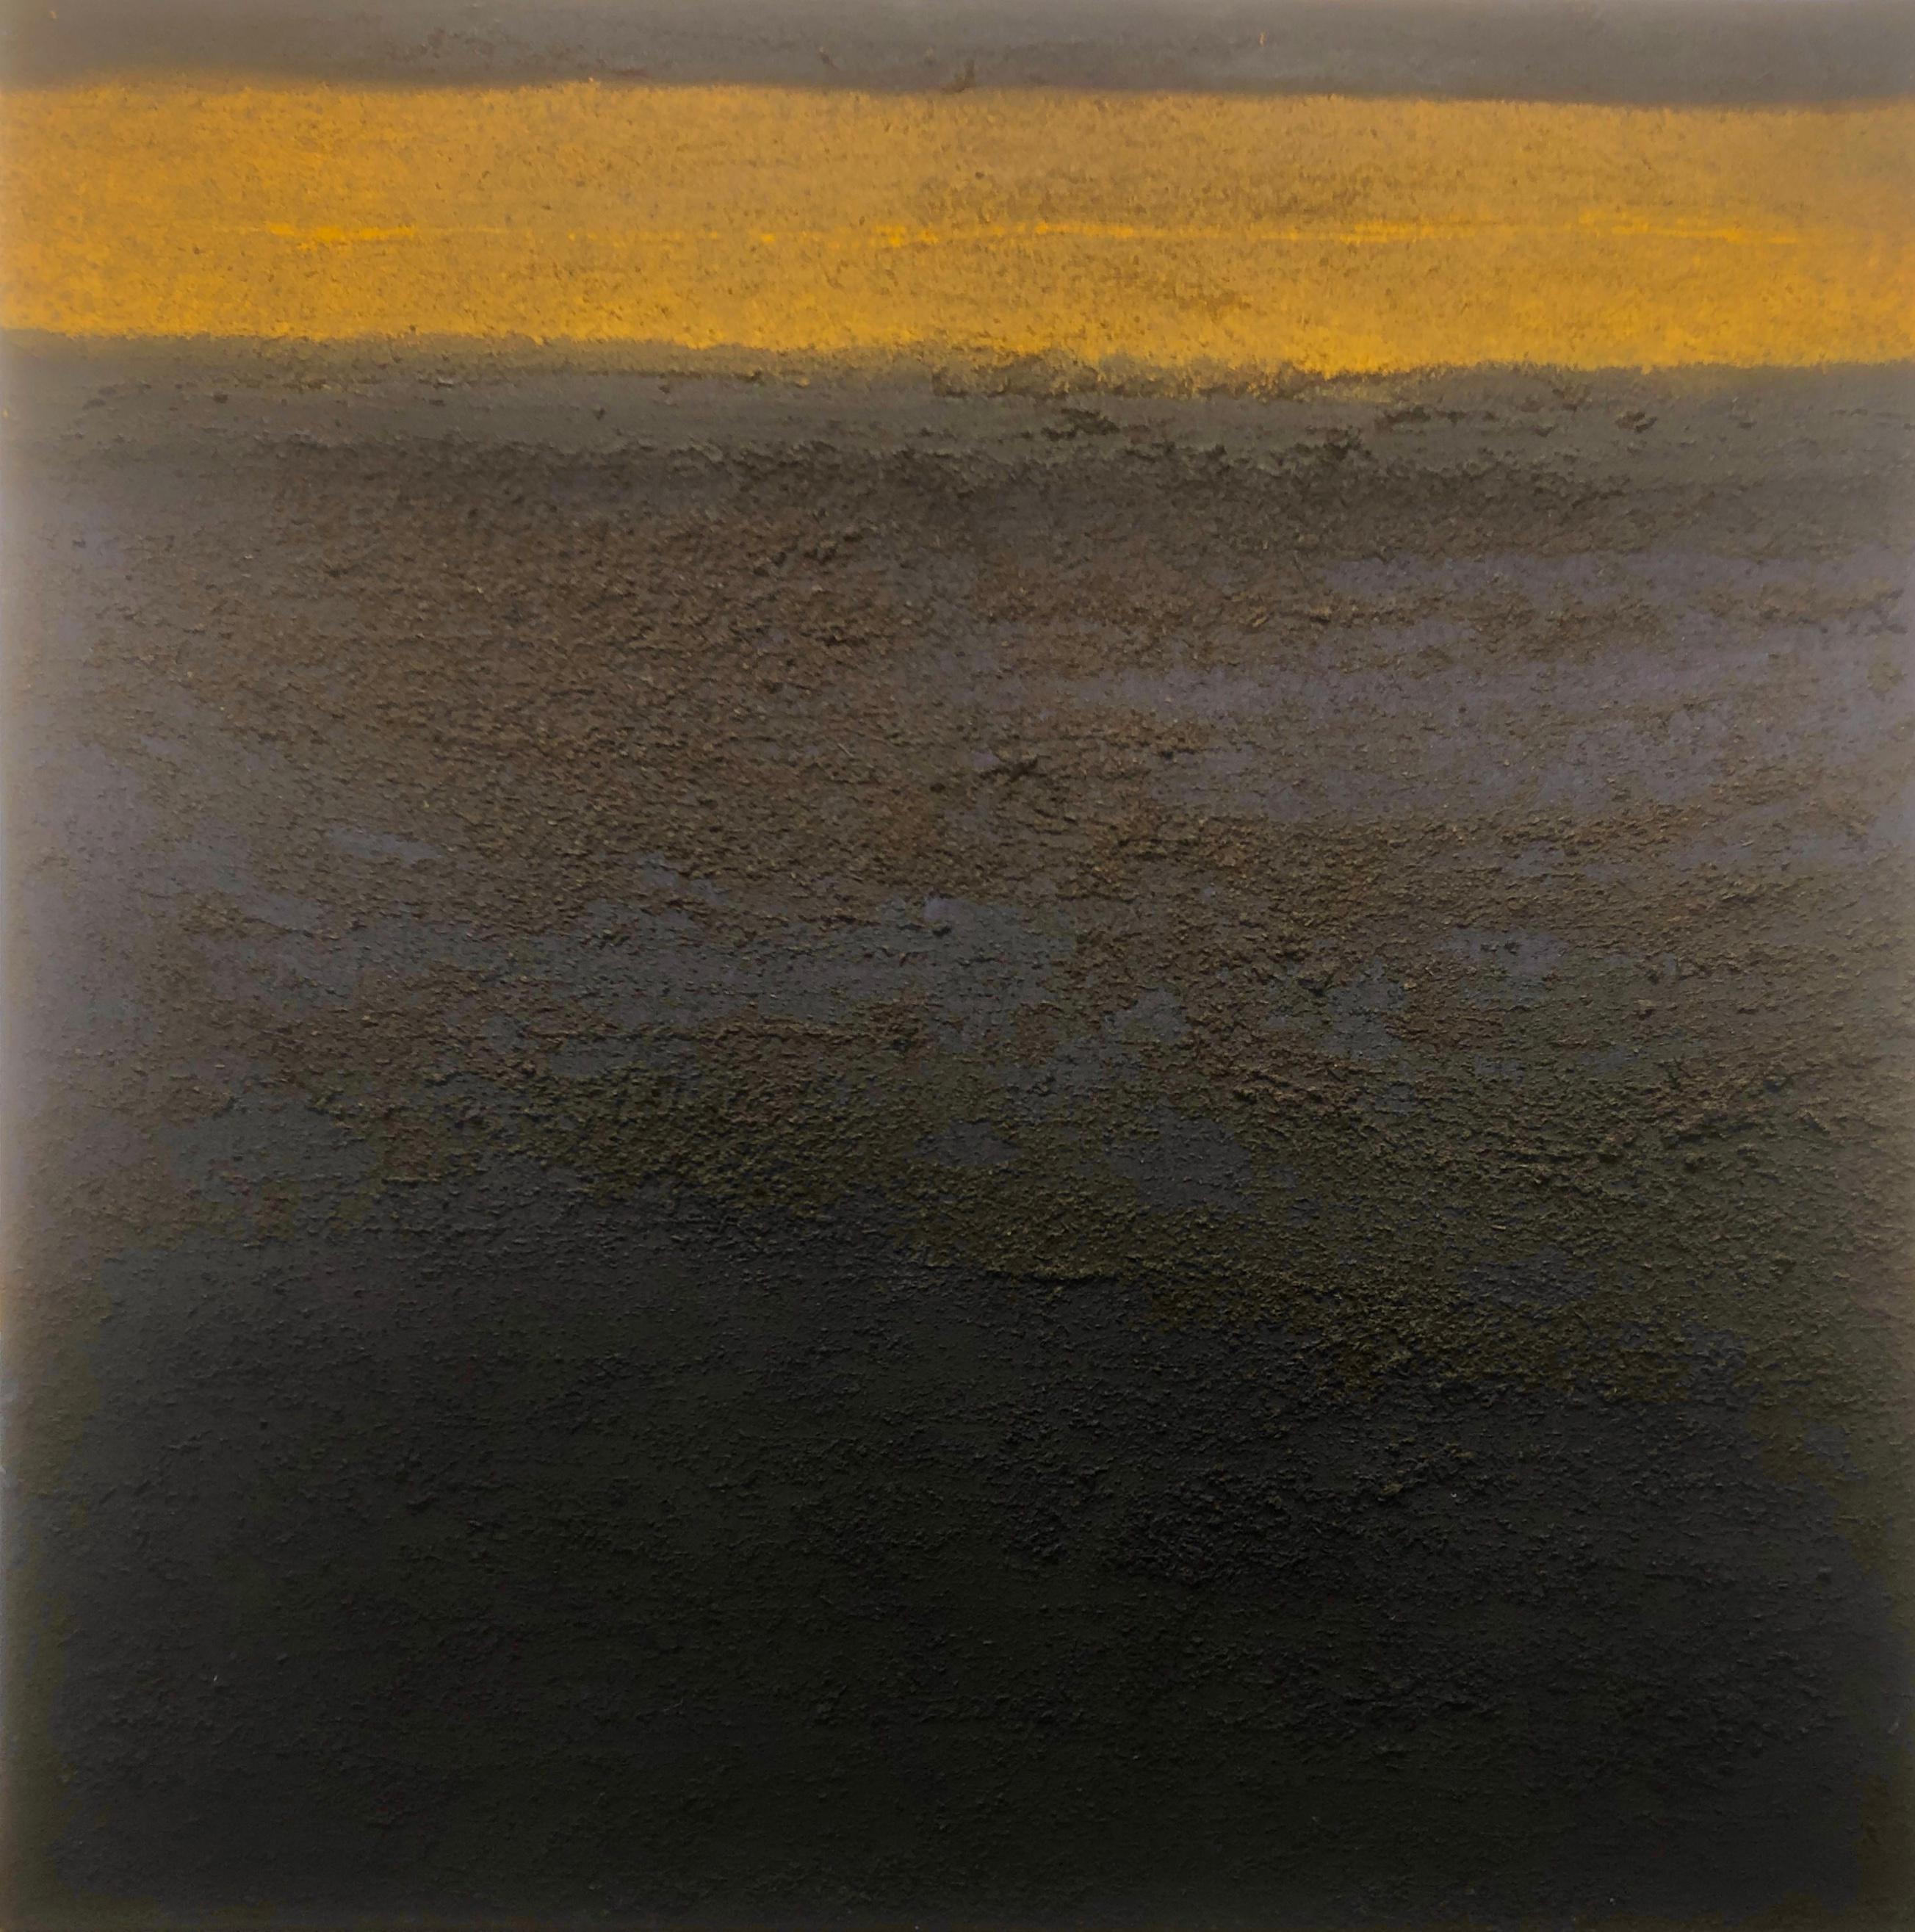 Bosco Sodi Abstract Painting – Komposition in schwarz und gelb Mischtechnik auf Leinwand zeitgenössische Kunst